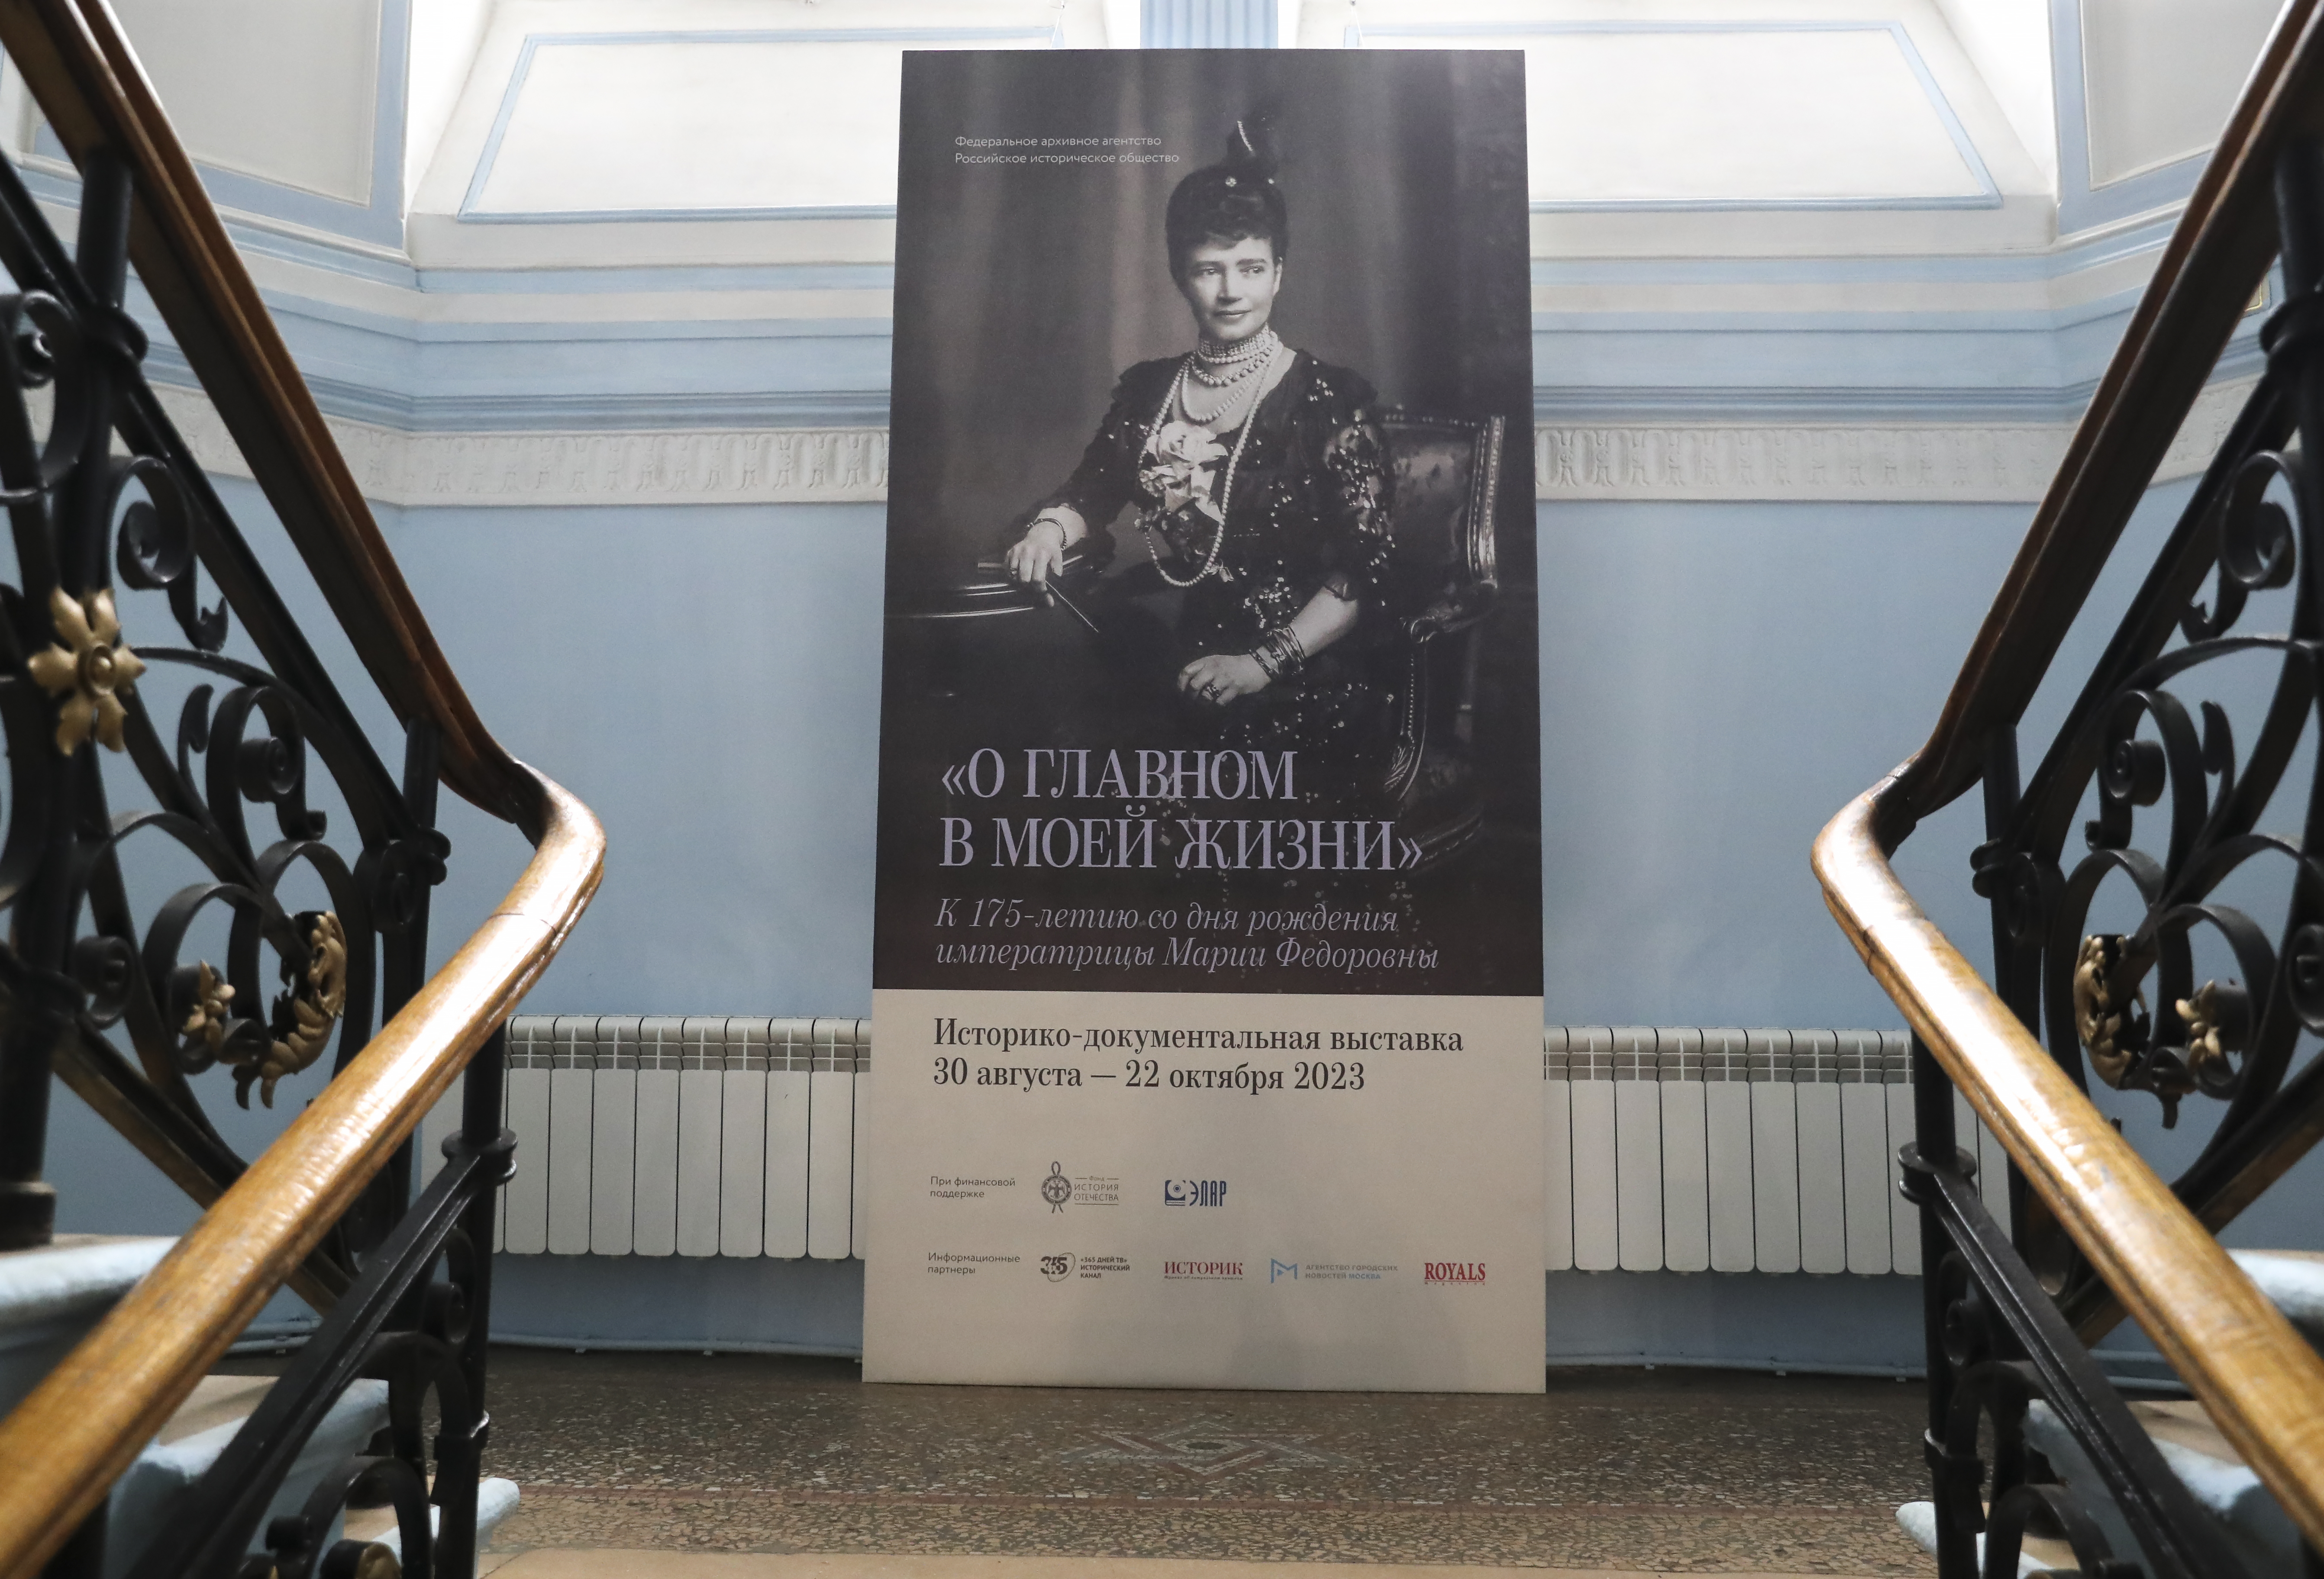 Открылась выставка «О главном в моей жизни», посвящённая императрице Марии Фёдоровне